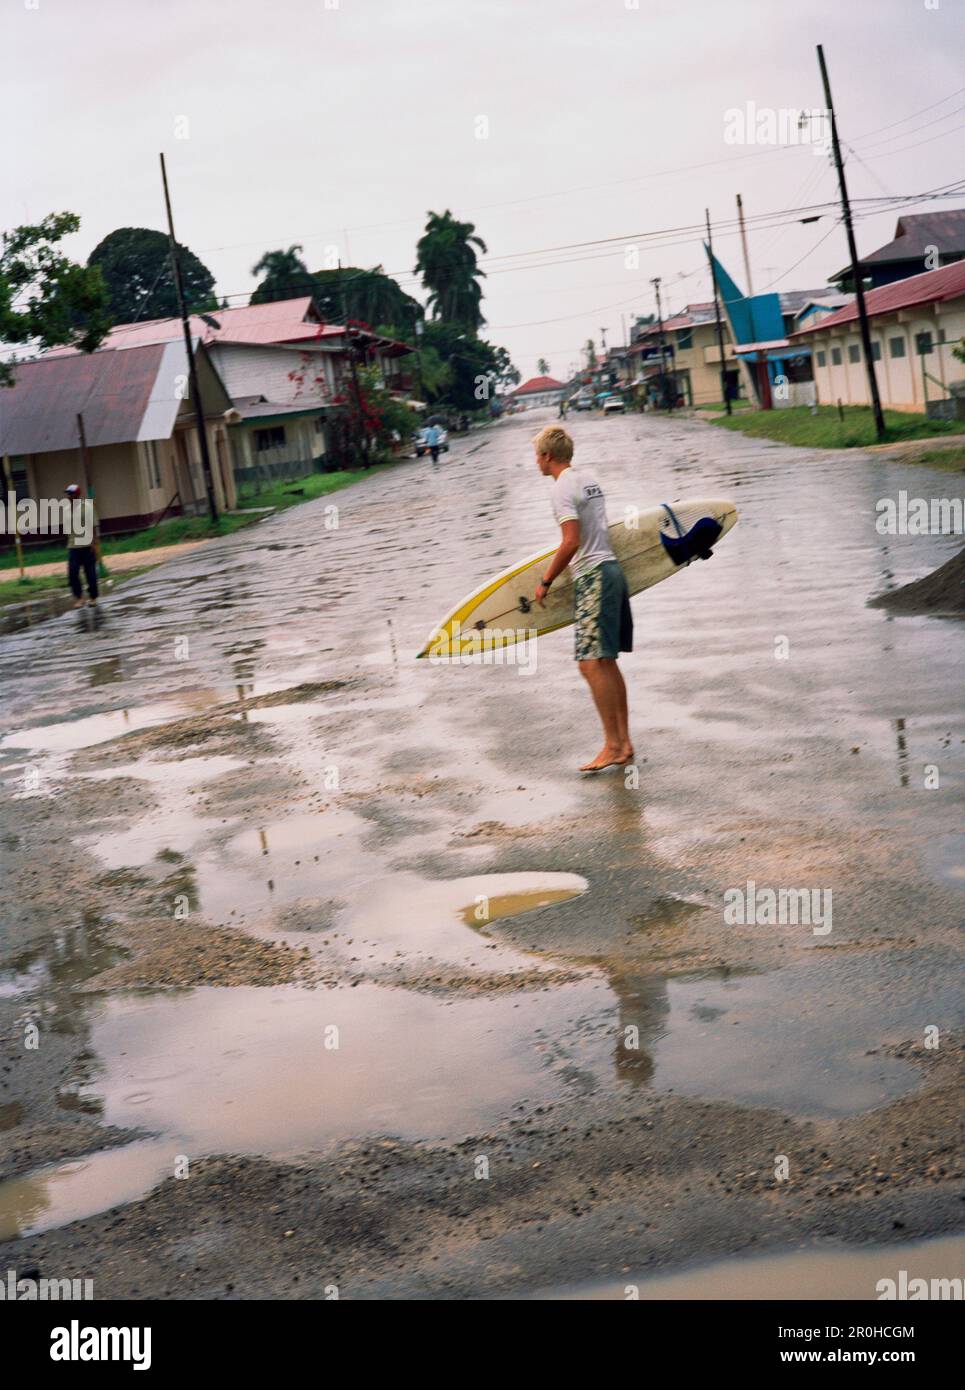 PANAMA, Bocas del Toro, un surfista passeggiate attraverso il centro della città sotto la pioggia, America Centrale Foto Stock